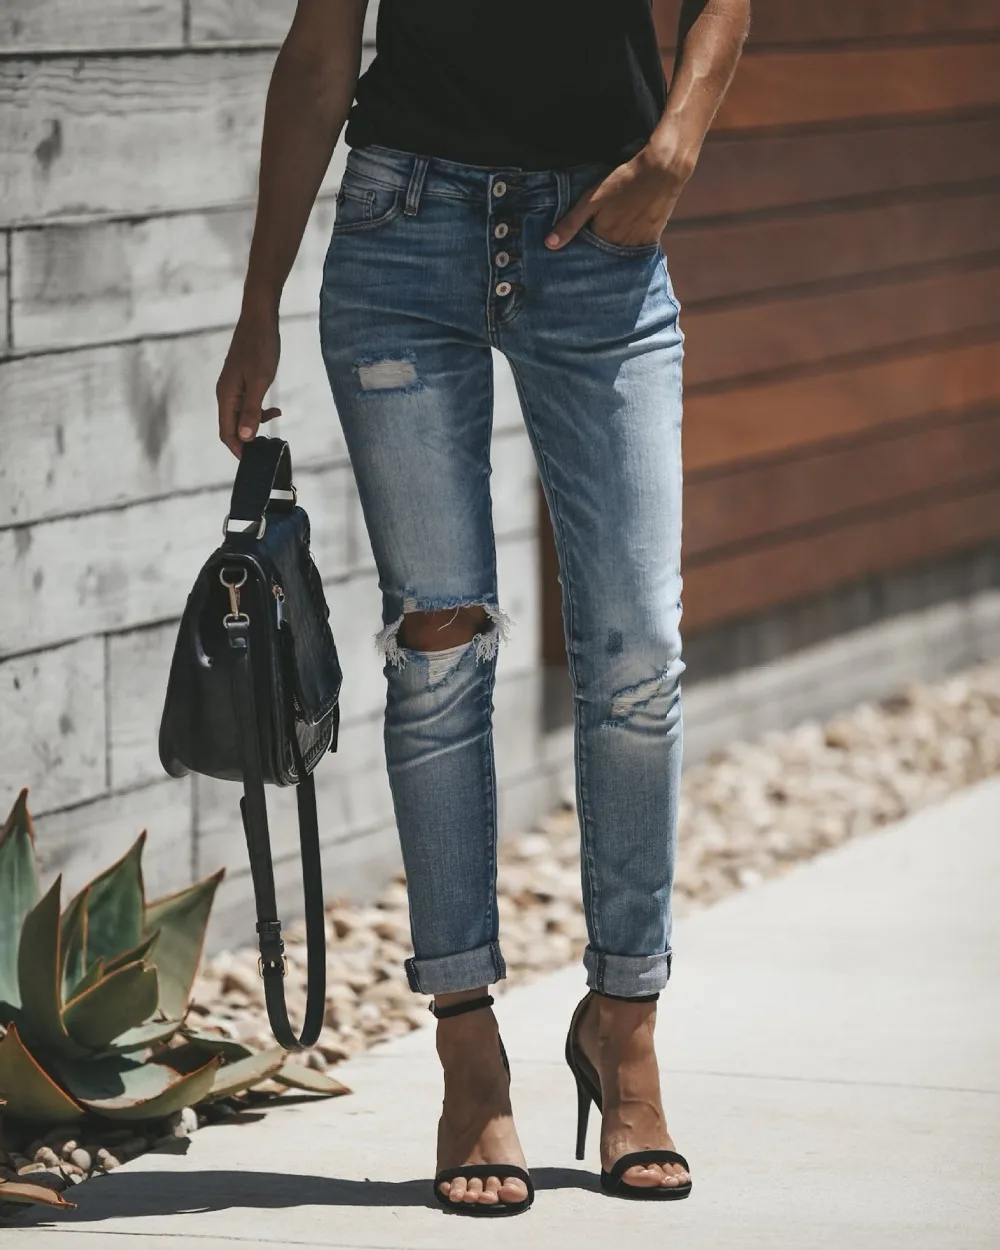 Зимние джинсы женские;повседневные;рваные, с дырками, укороченные, облегающие, женские джинсы;брюки женские, джинсы с высокой талией, узкие, синие, джинсовые штаны;джинсы женские большие размеры черные джинсы мом